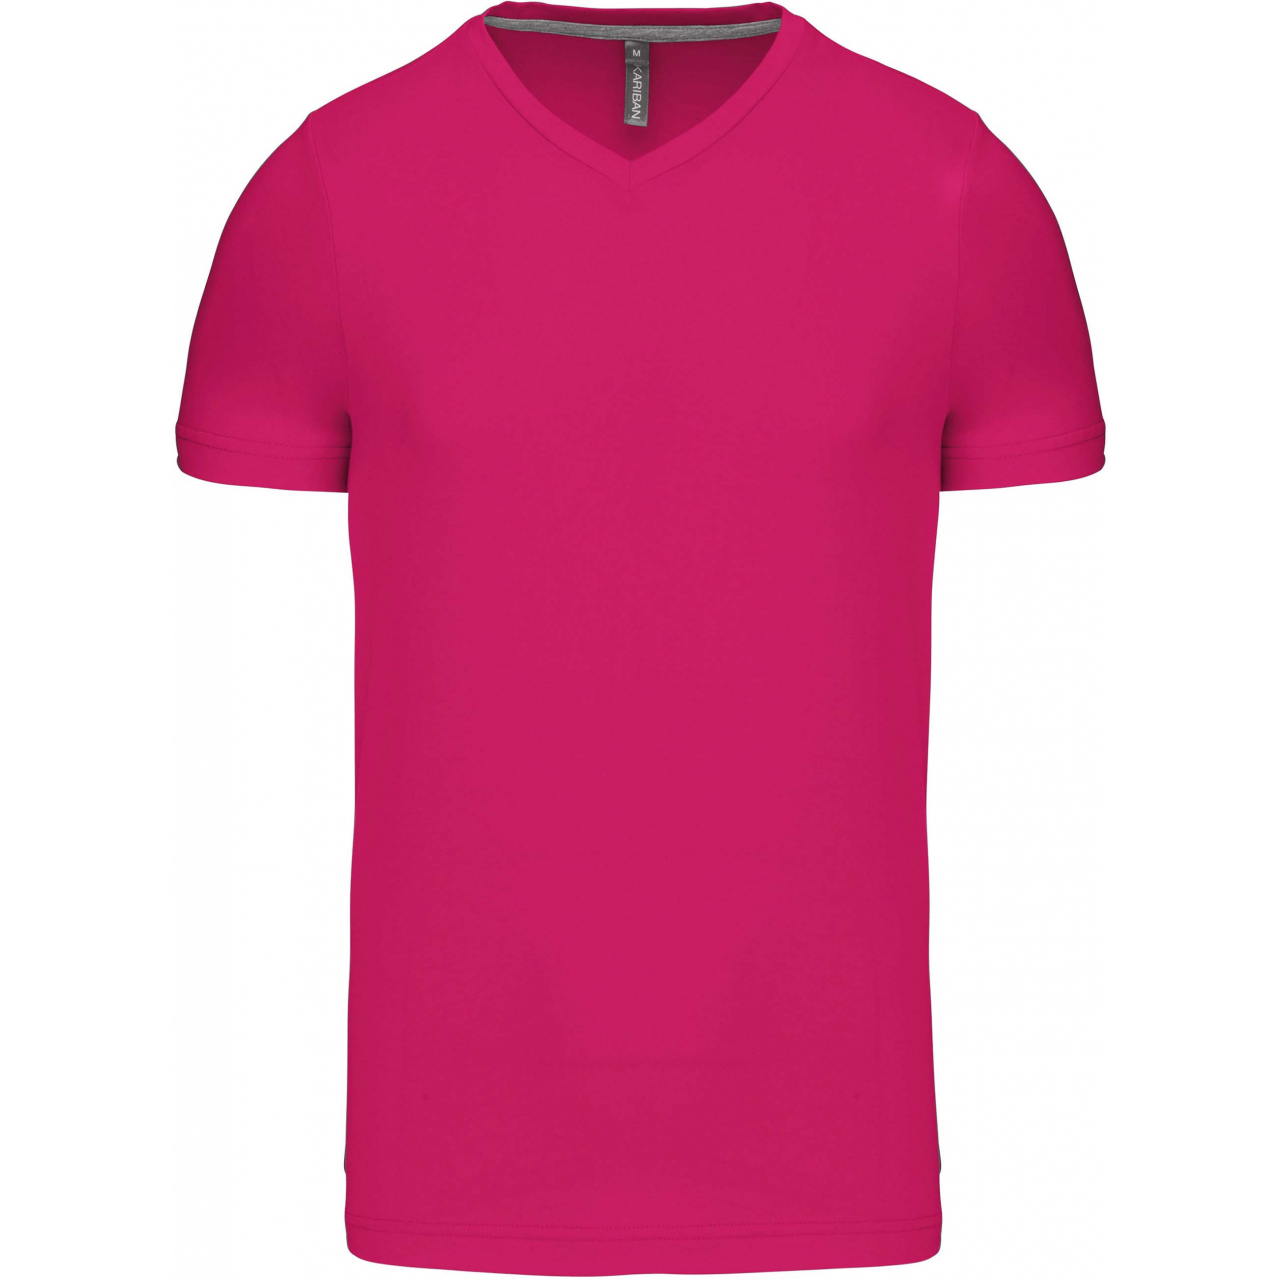 Pánské tričko Kariban krátký rukáv V-neck - růžové, L